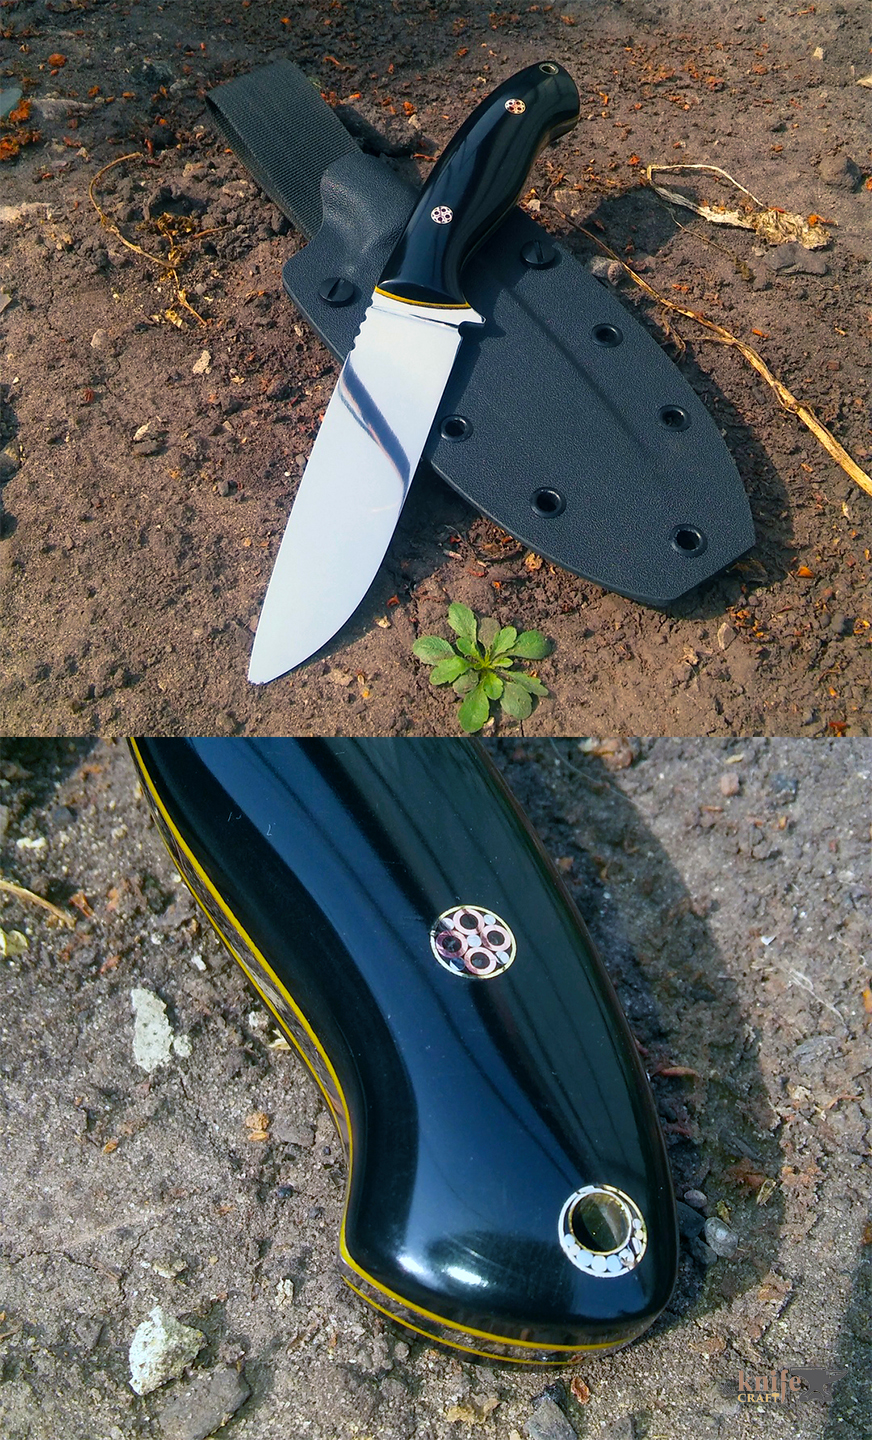 цельнометаллический черный охотничий разделочный нож из порошковой стали спрямыми спусками от обуха в Тамбове 